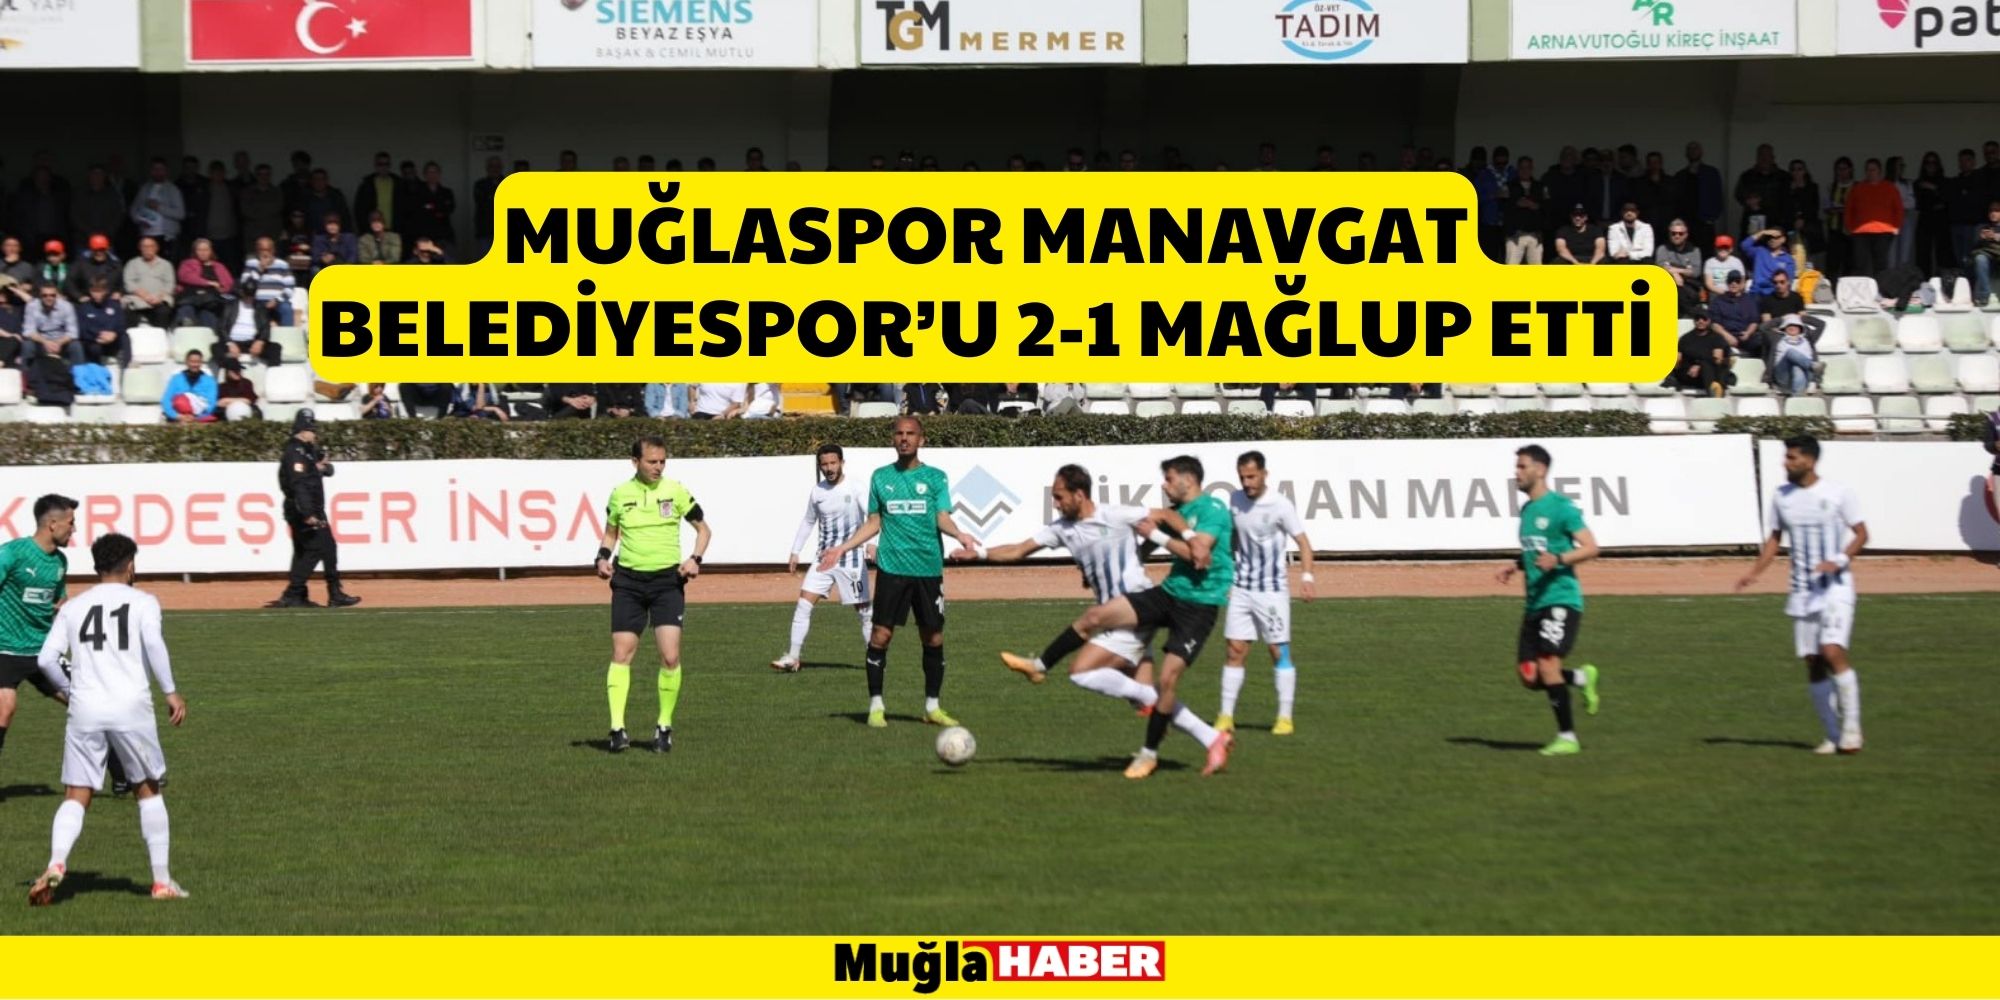 Muğlaspor Manavgat Belediyespor’u 2-1 Mağlup Etti